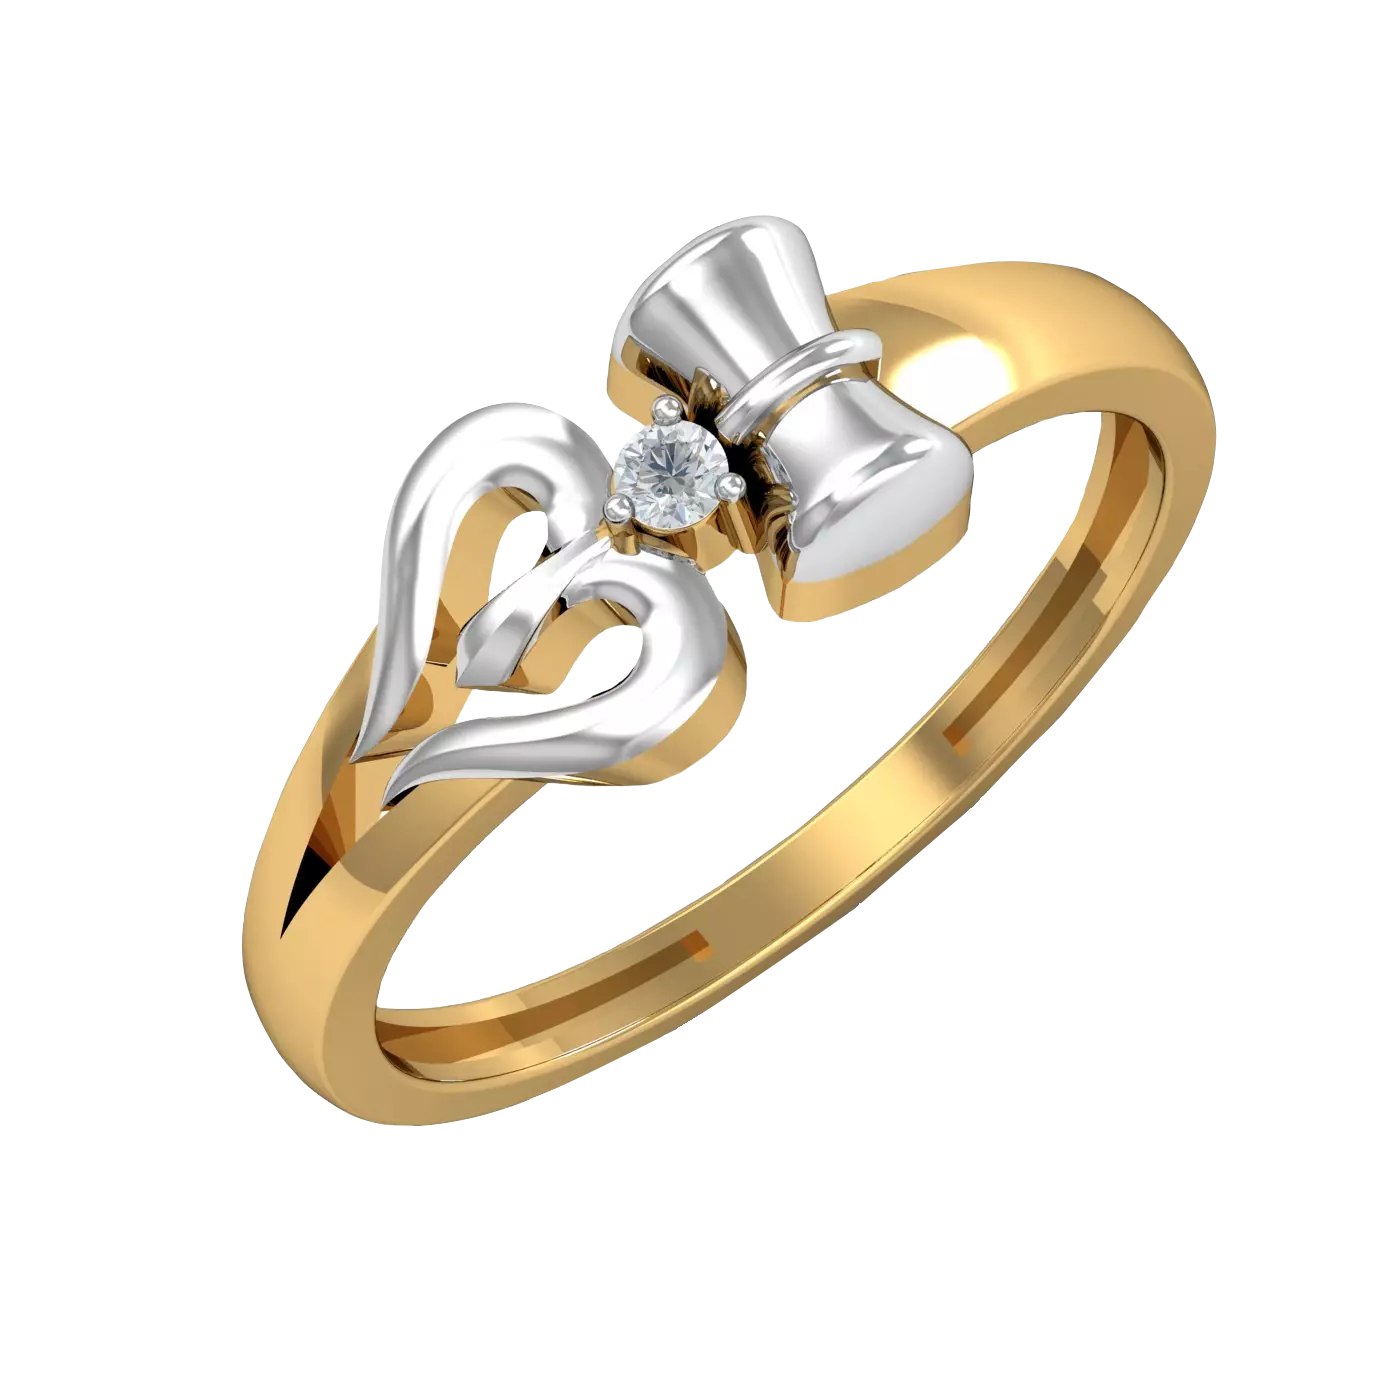 The Damru Trishul Shiva Ring